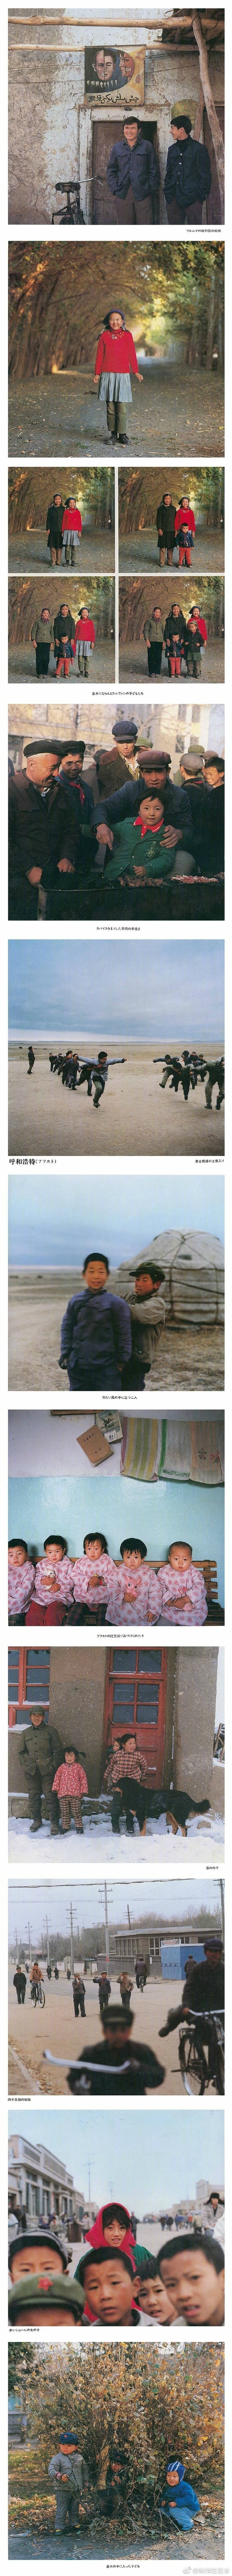 日本摄影师秋山亮二1983年出版了写真集《你好小朋友》